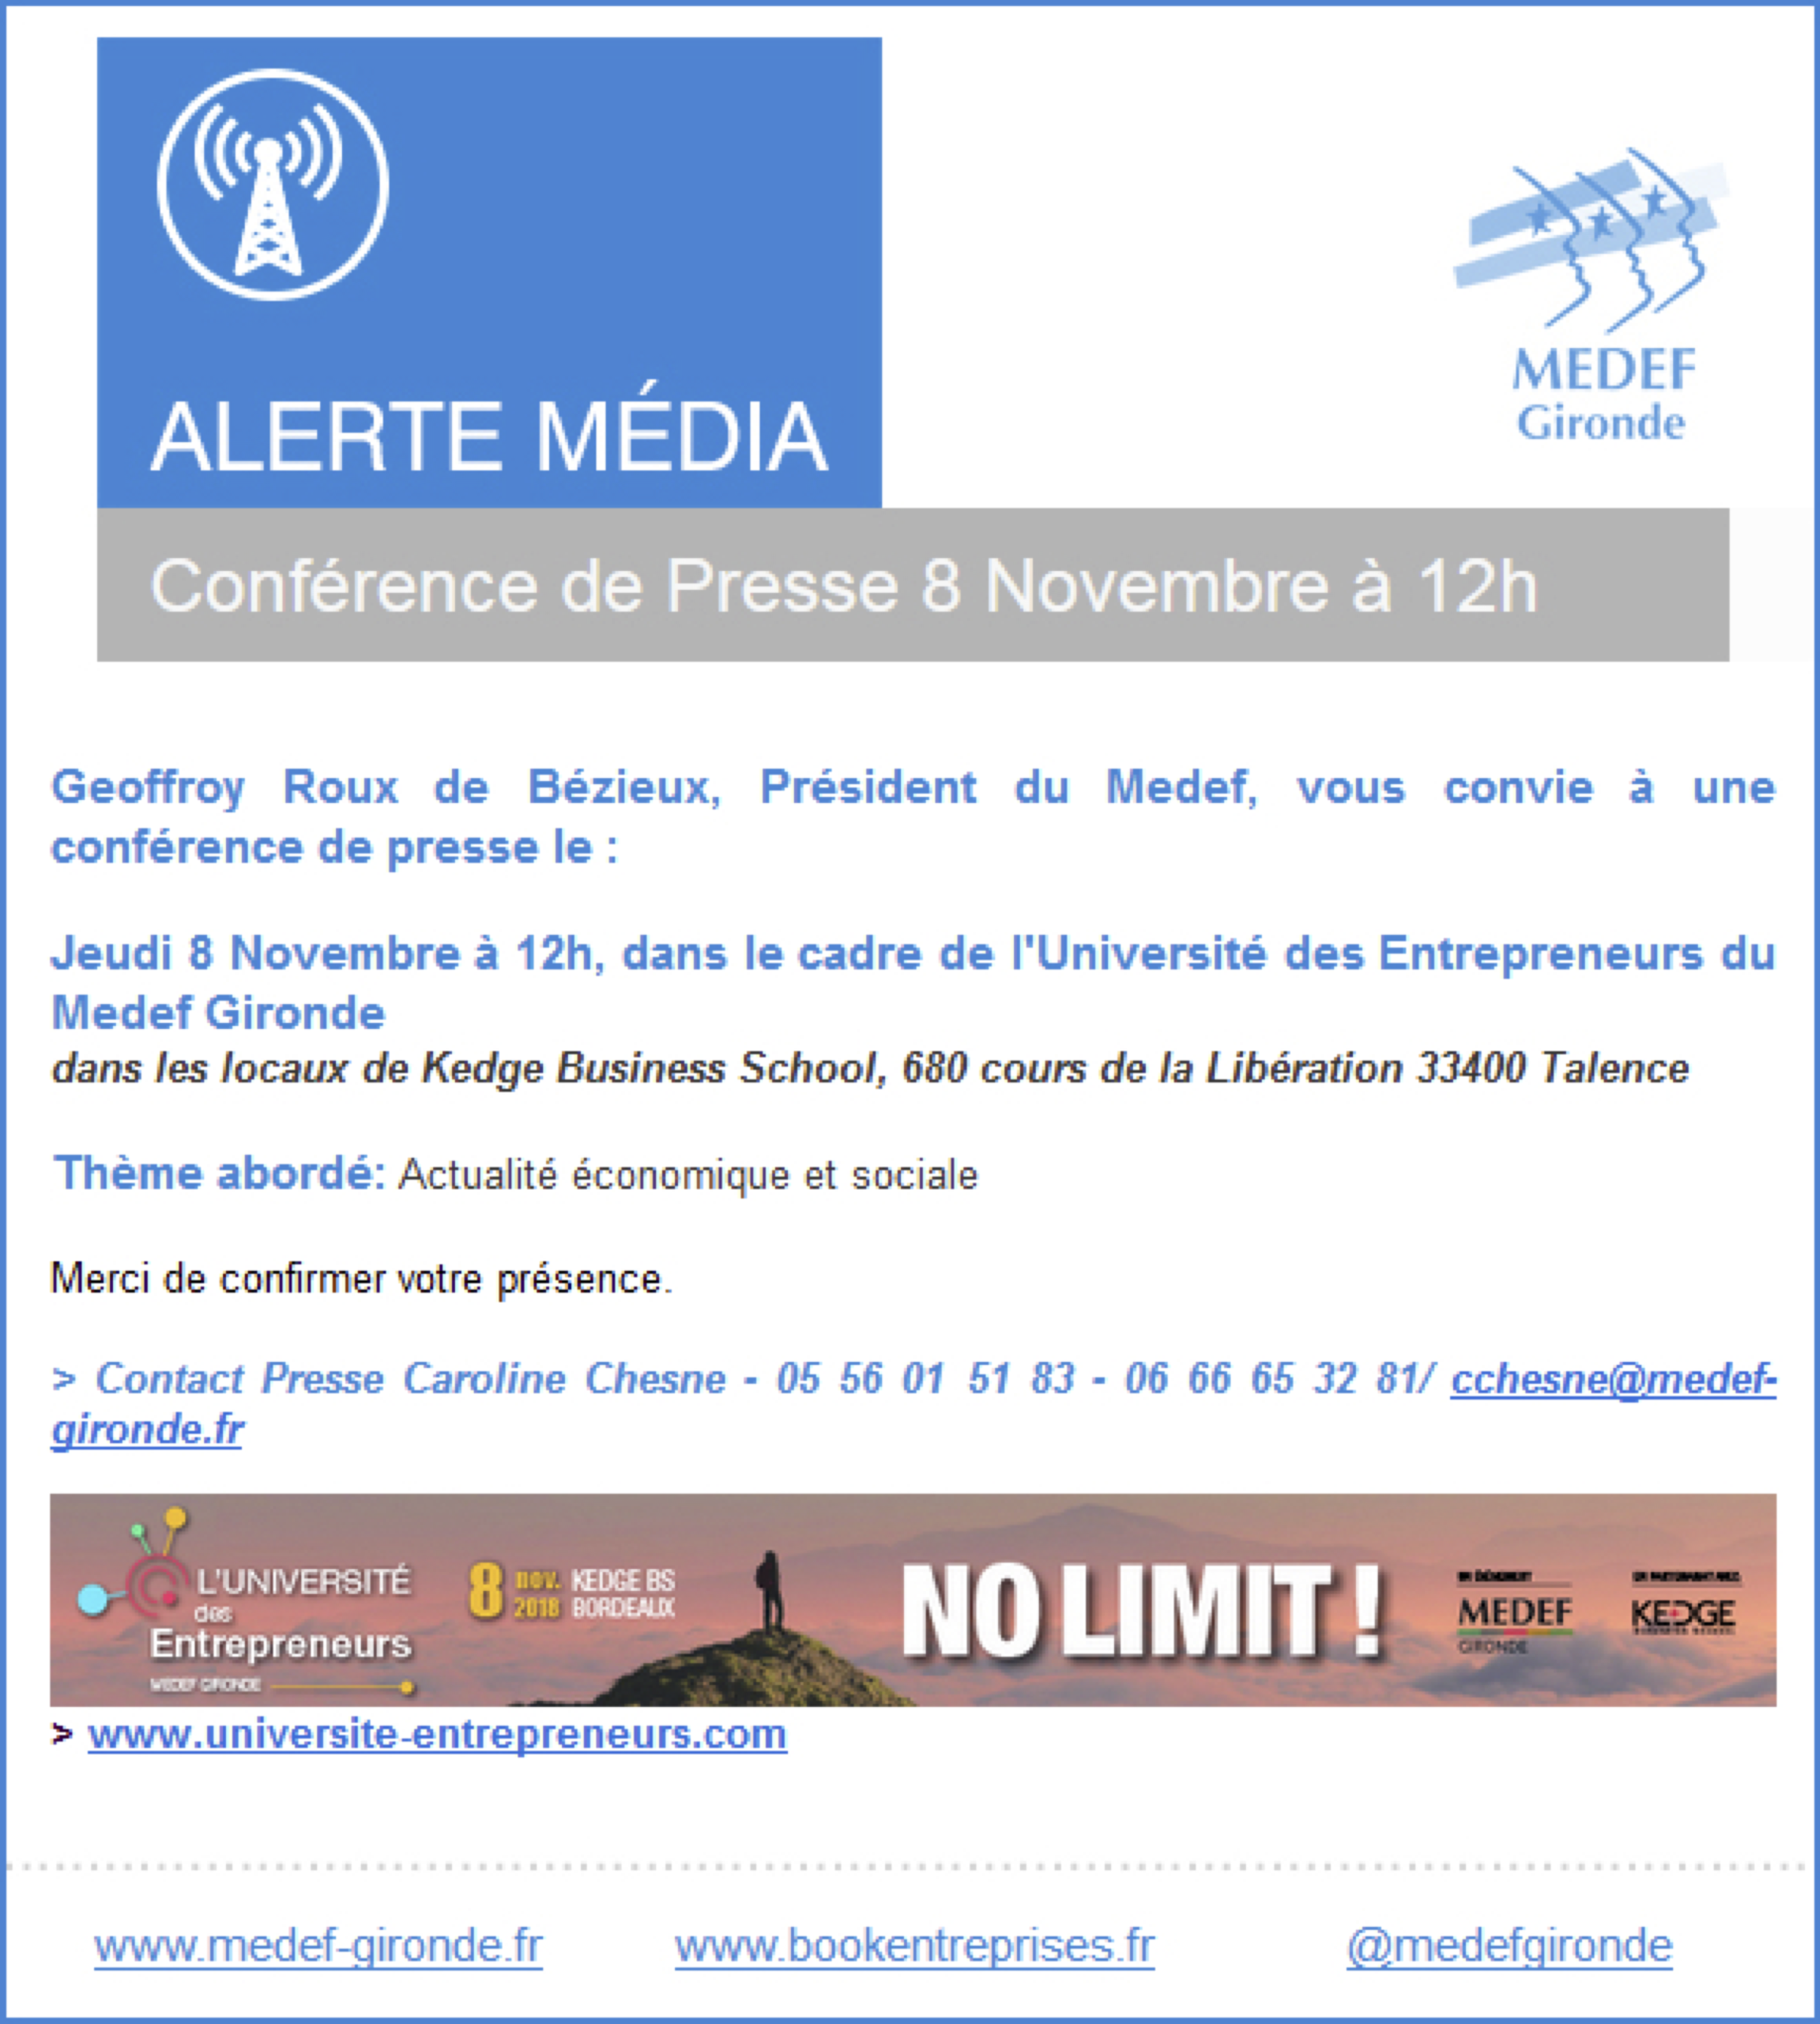 conference-de-presse-geoffroy-roux-de-bezieux_8-novembre-a-12h